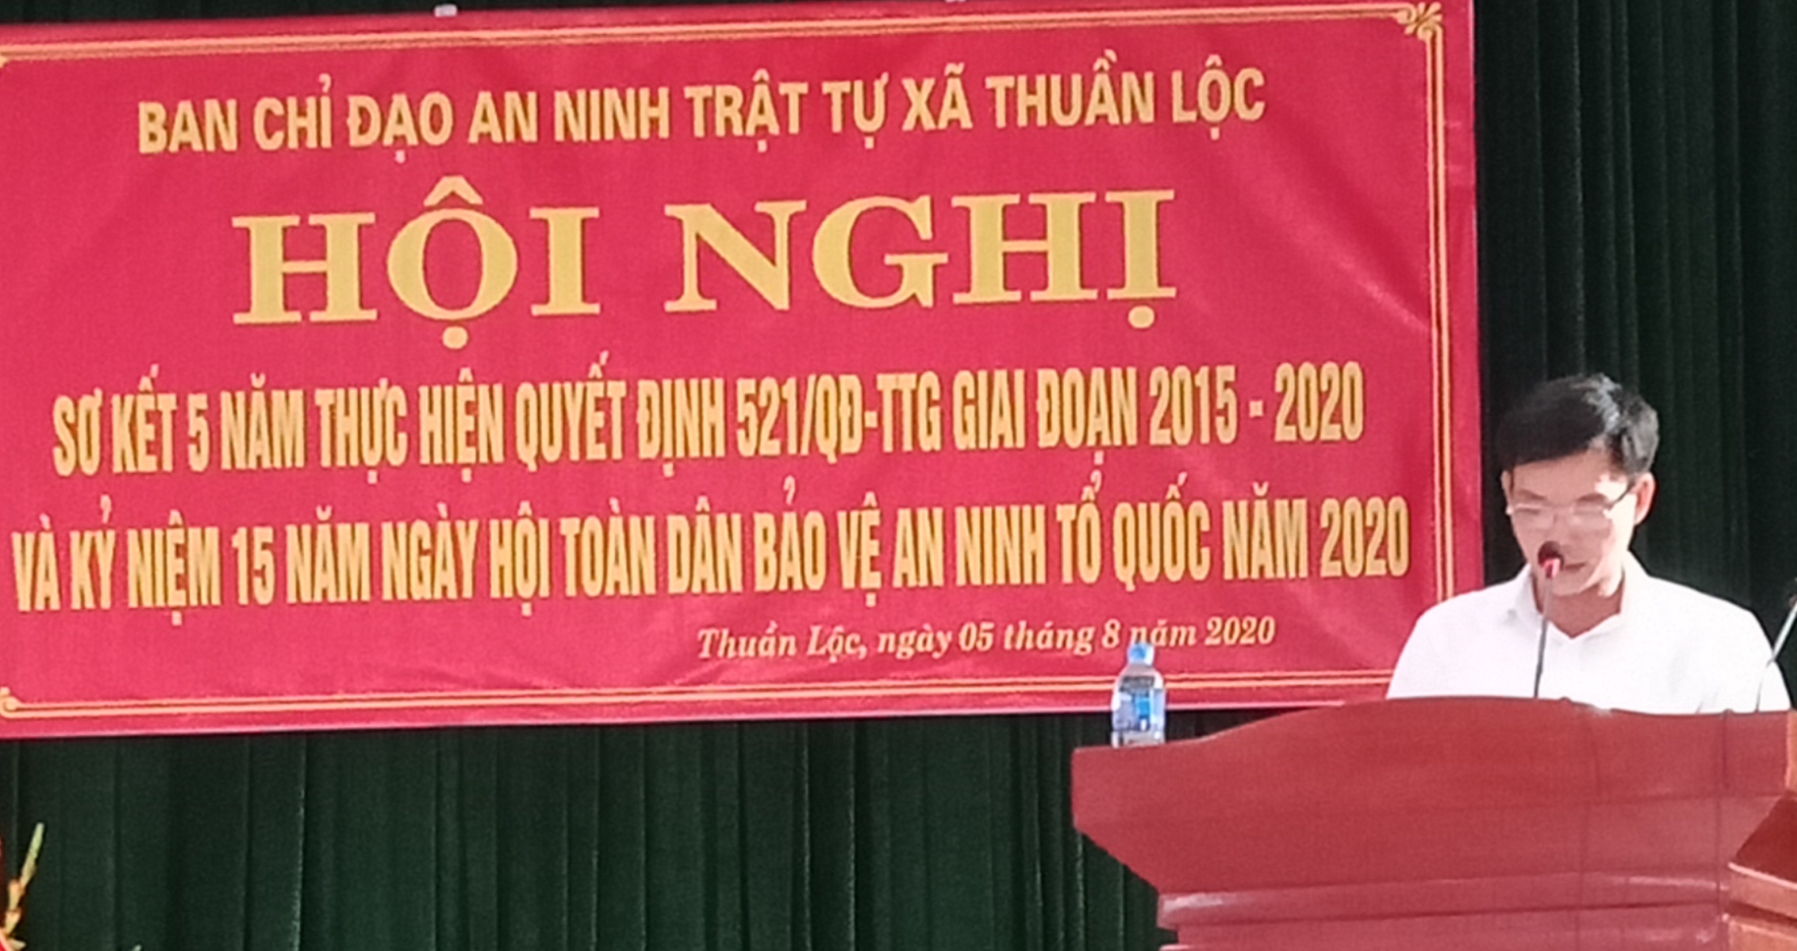 Xã Thuần Lộc  tổ chức thành công hội nghị sơ kết năm thực hiện quyết định 521/QĐ-TTG giai đoạn 2015 - 2020 và kỷ niệm 15 năm ngày hội toàn dân bảo vệ ANTQ năm 2020.